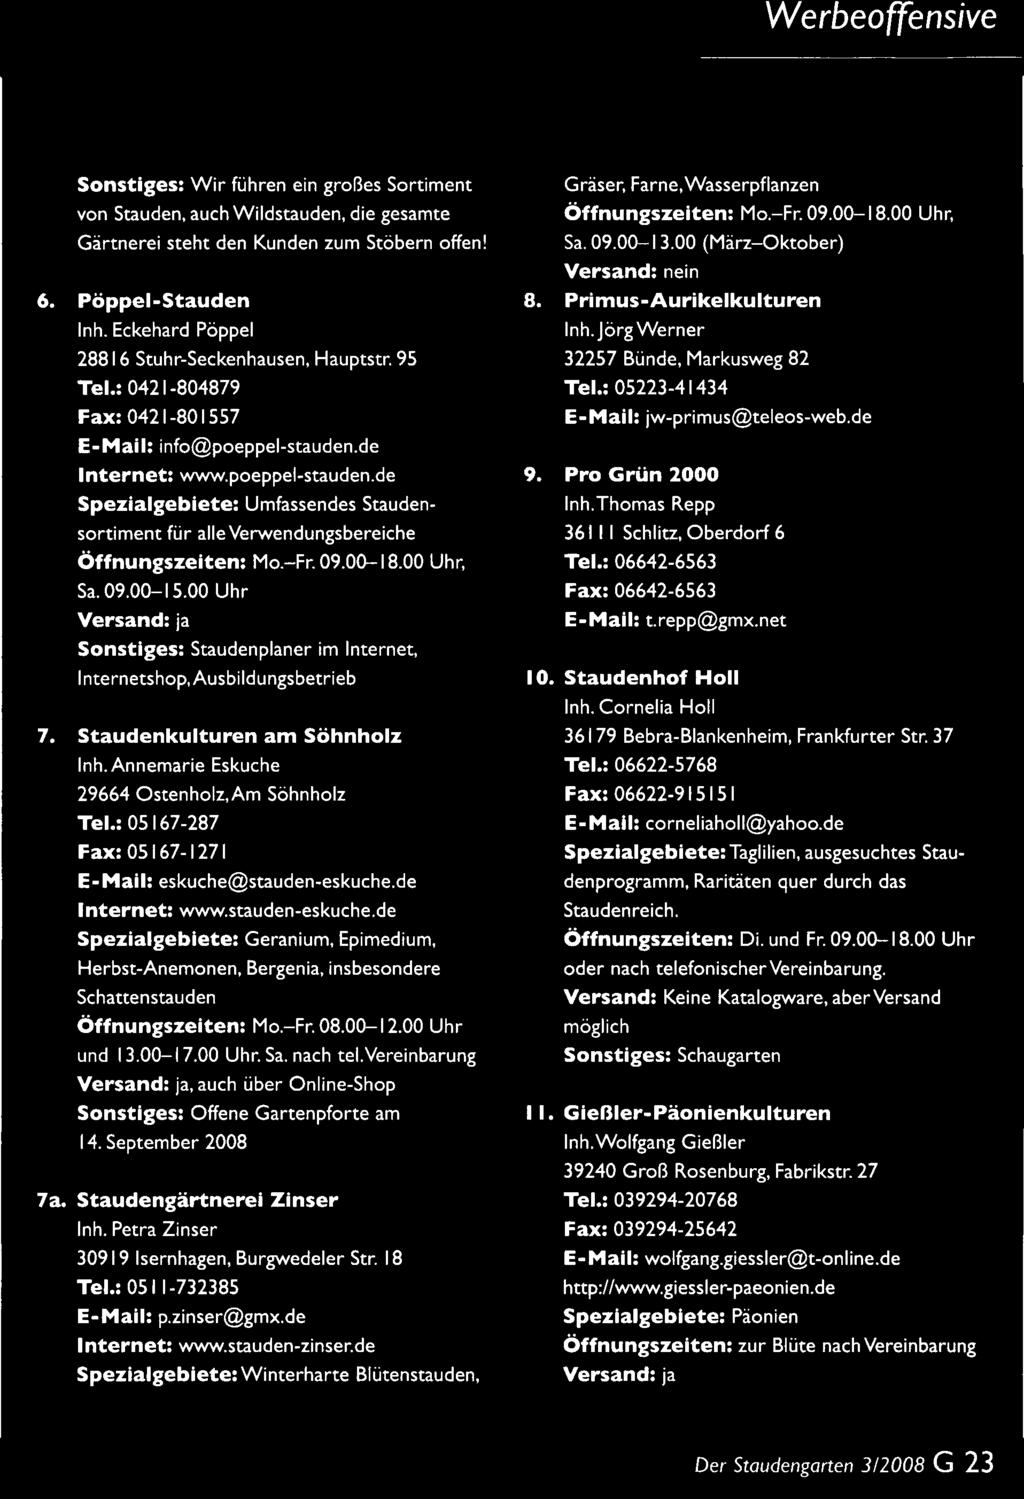 : 05167-287 Fax: 05167-1271 E-Mail: eskuche@stauden-eskuche.de Internet: www.stauden-eskuche.de Spezialgebiete: Geranium, Epimedium, Herbst-Anemonen, Bergenia, insbesondere Schattenstauden Öffnungszeiten: Mo.